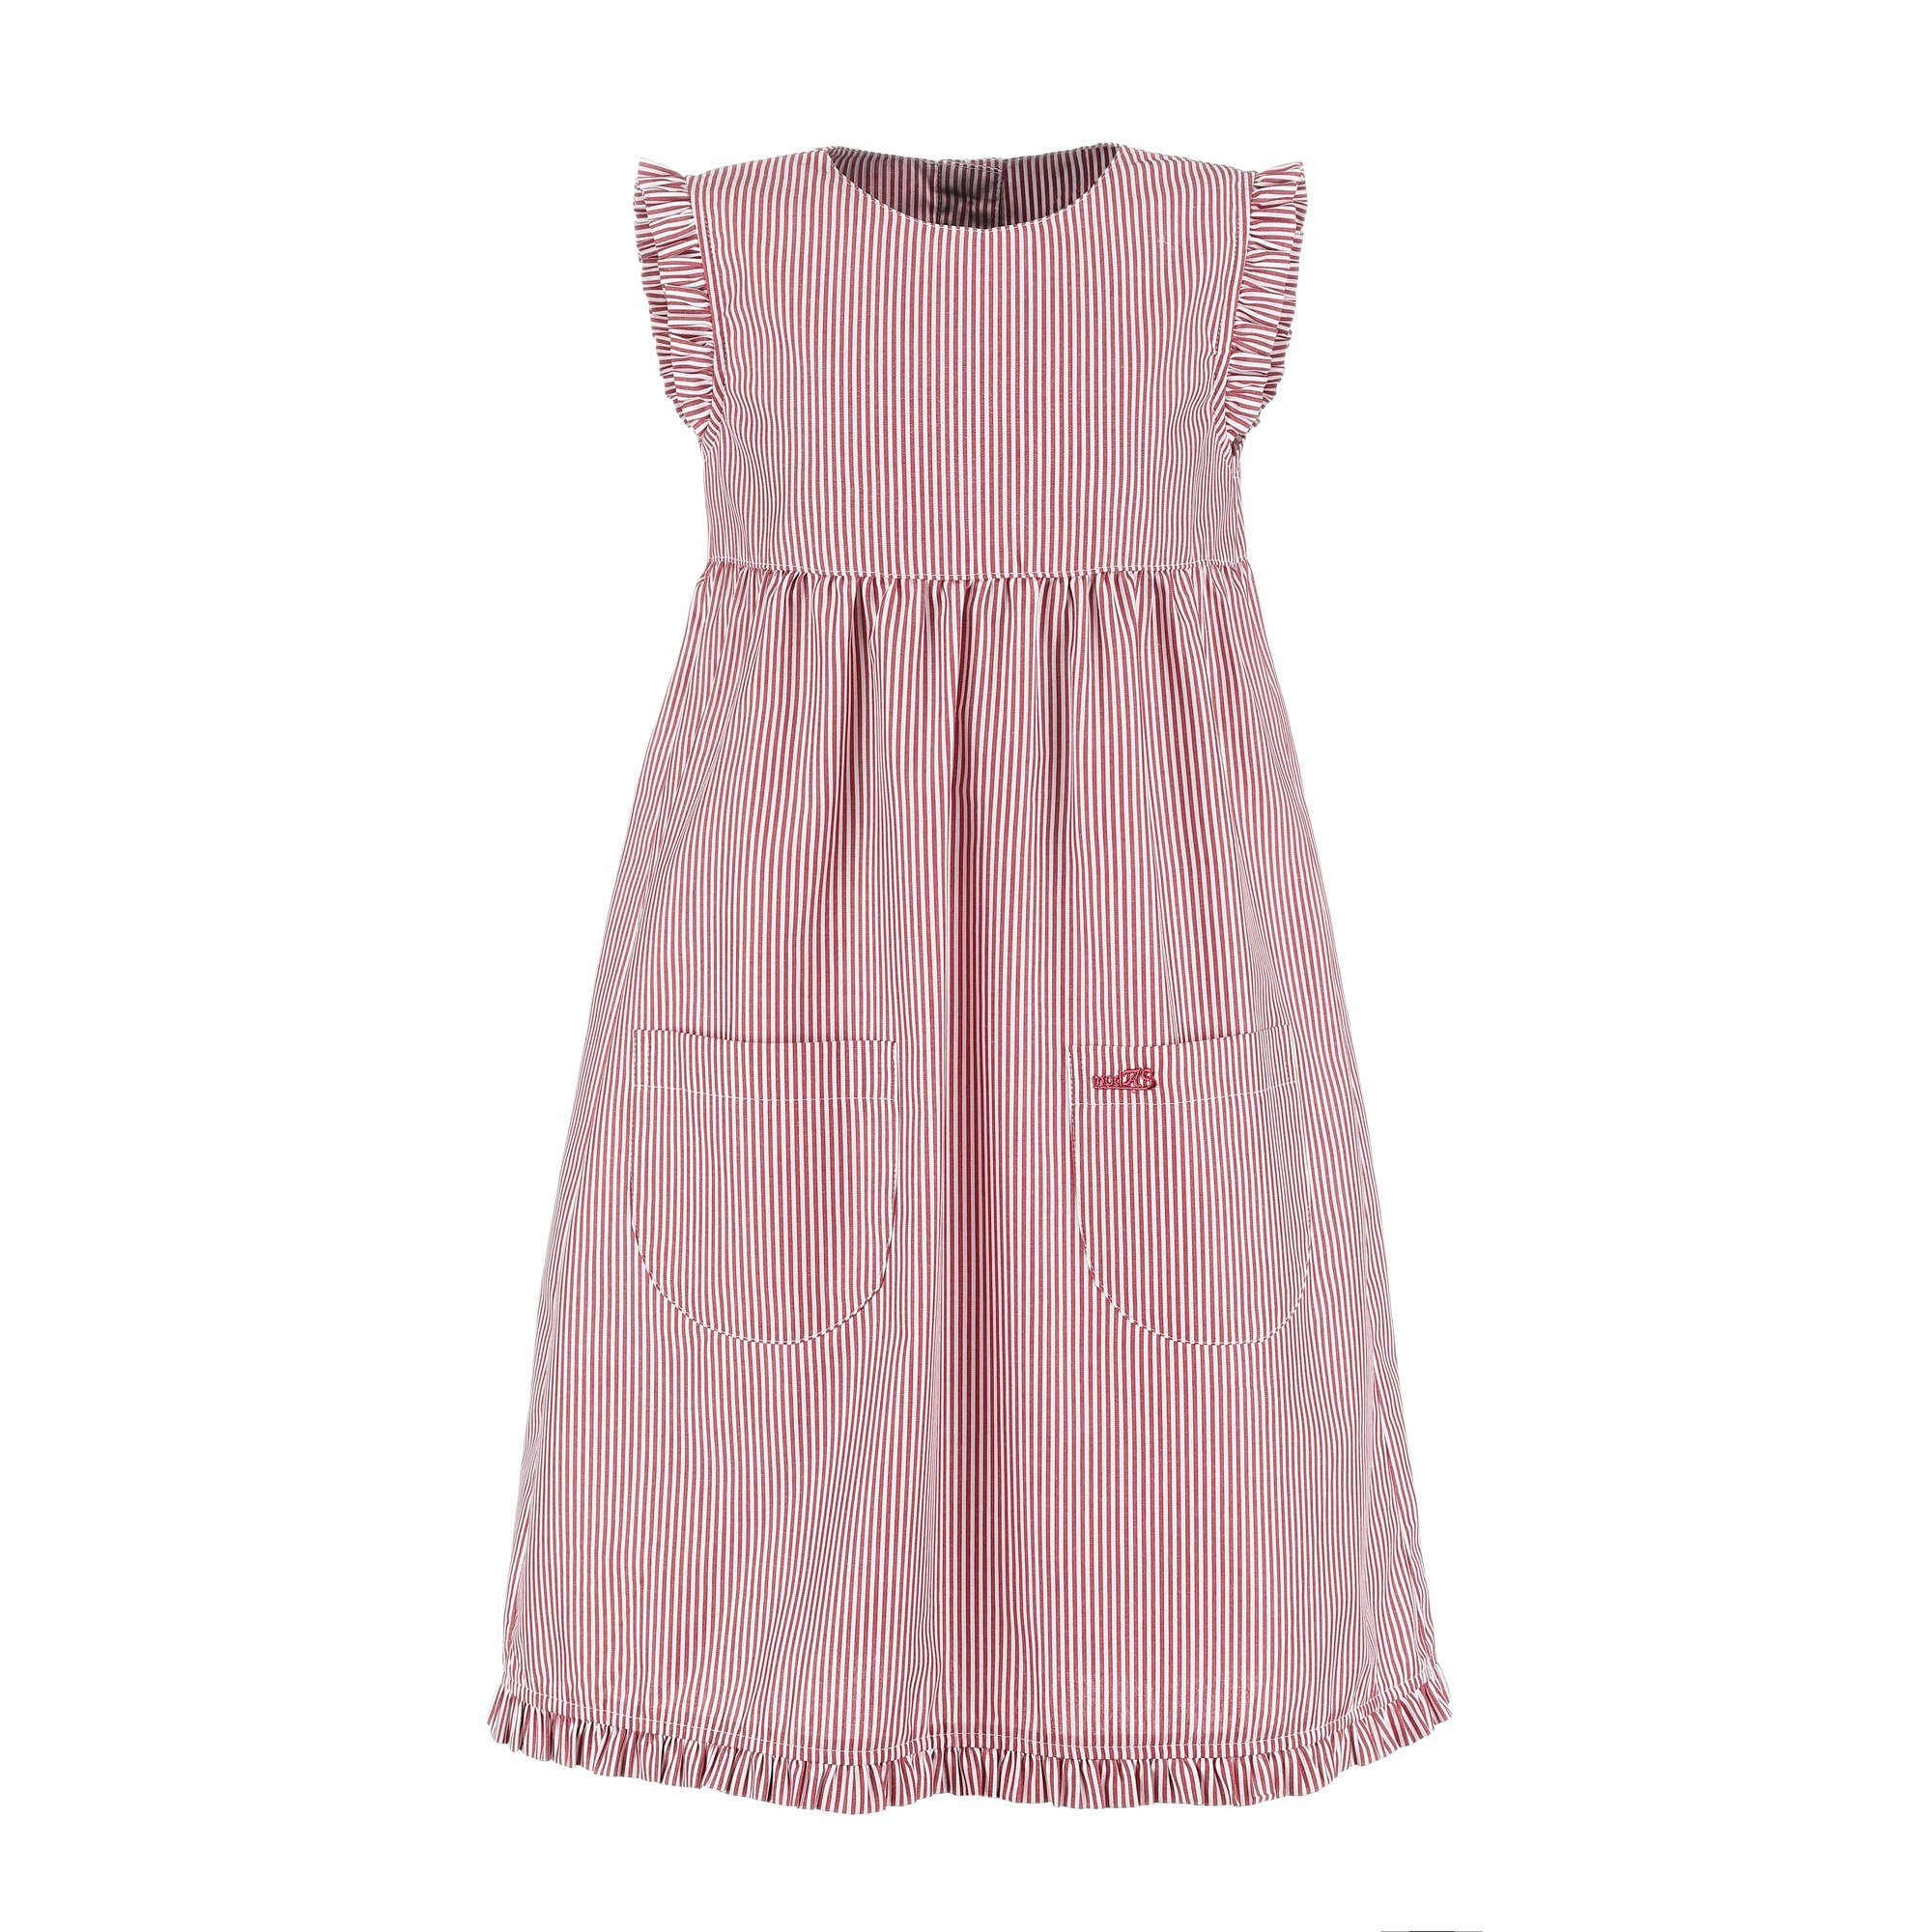 Rüschen gestreift modAS Sommerkleid gestreift Kinder Streifen mit (023) Mädchenkleid mit - Kleid rot/weiß